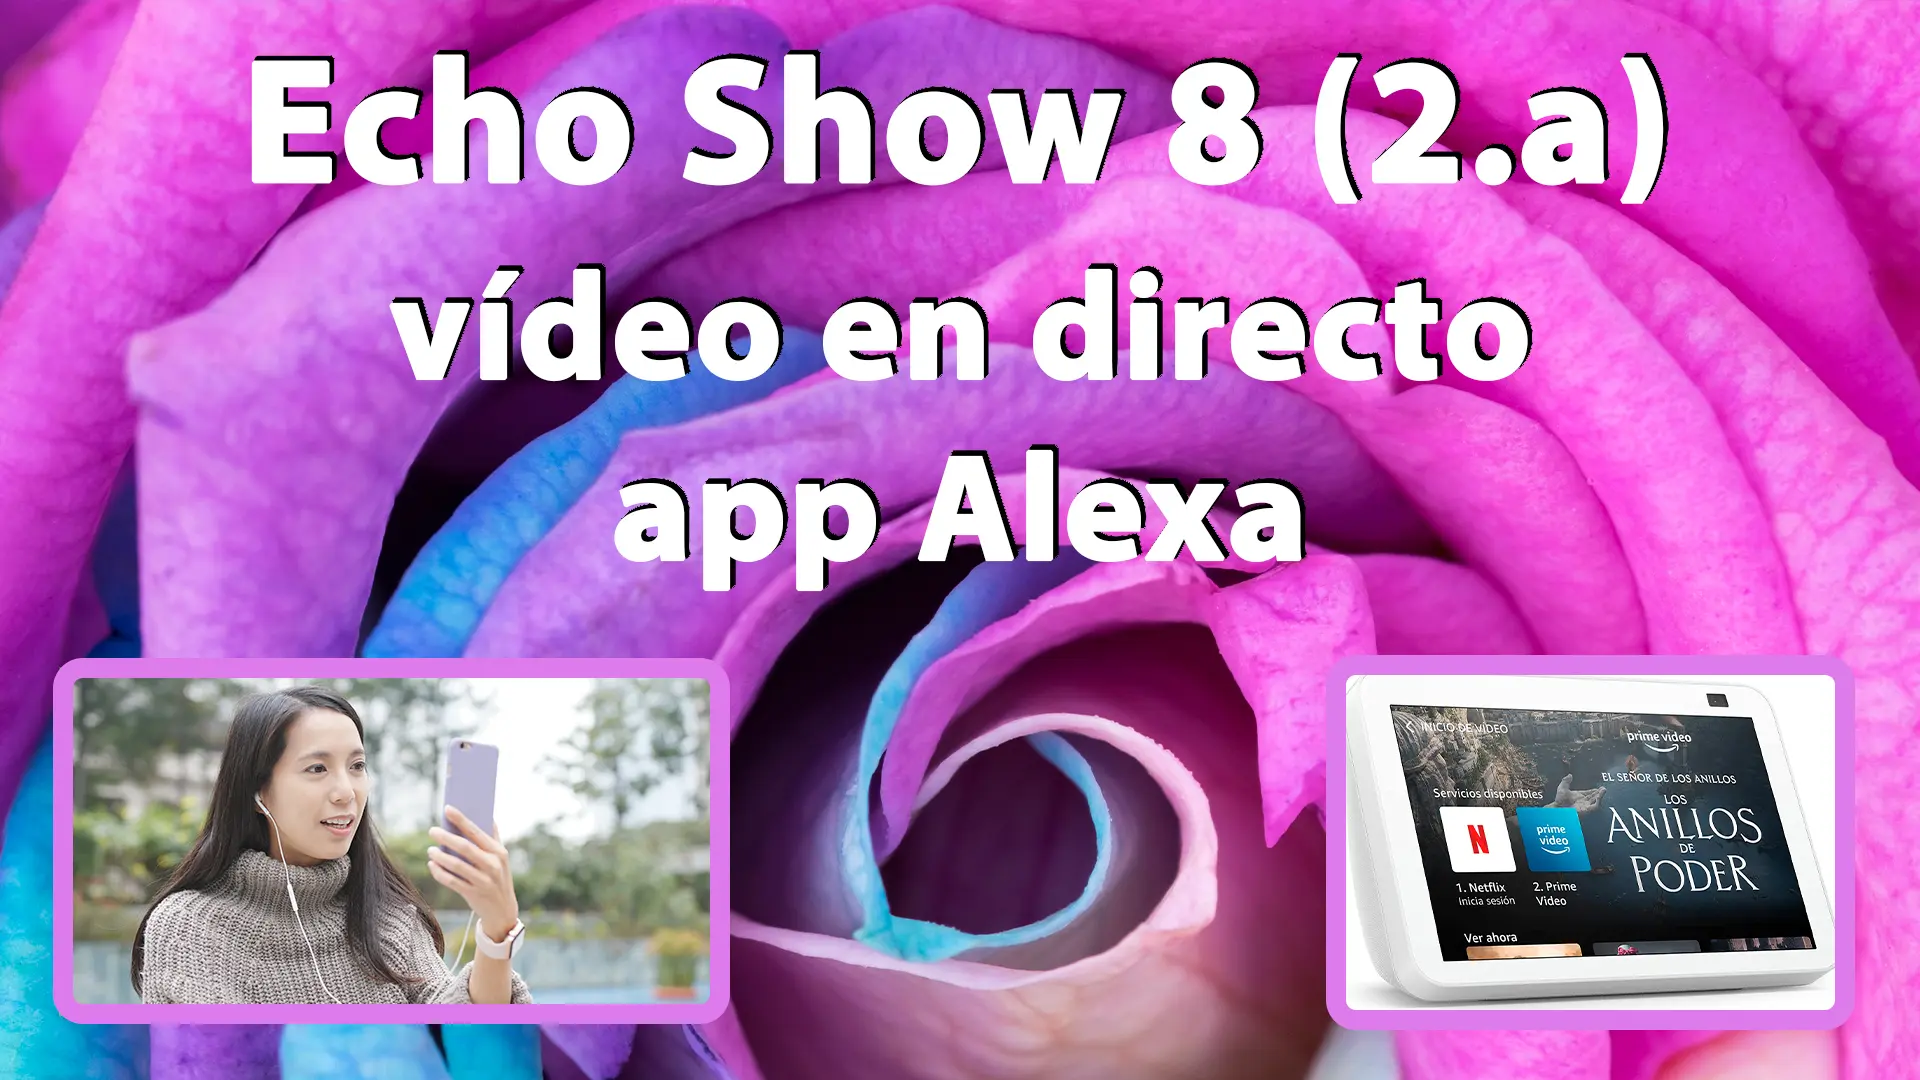 Cómo ver el vídeo en directo de la cámara del Echo Show 8 en la app Alexa con la vigilancia doméstica